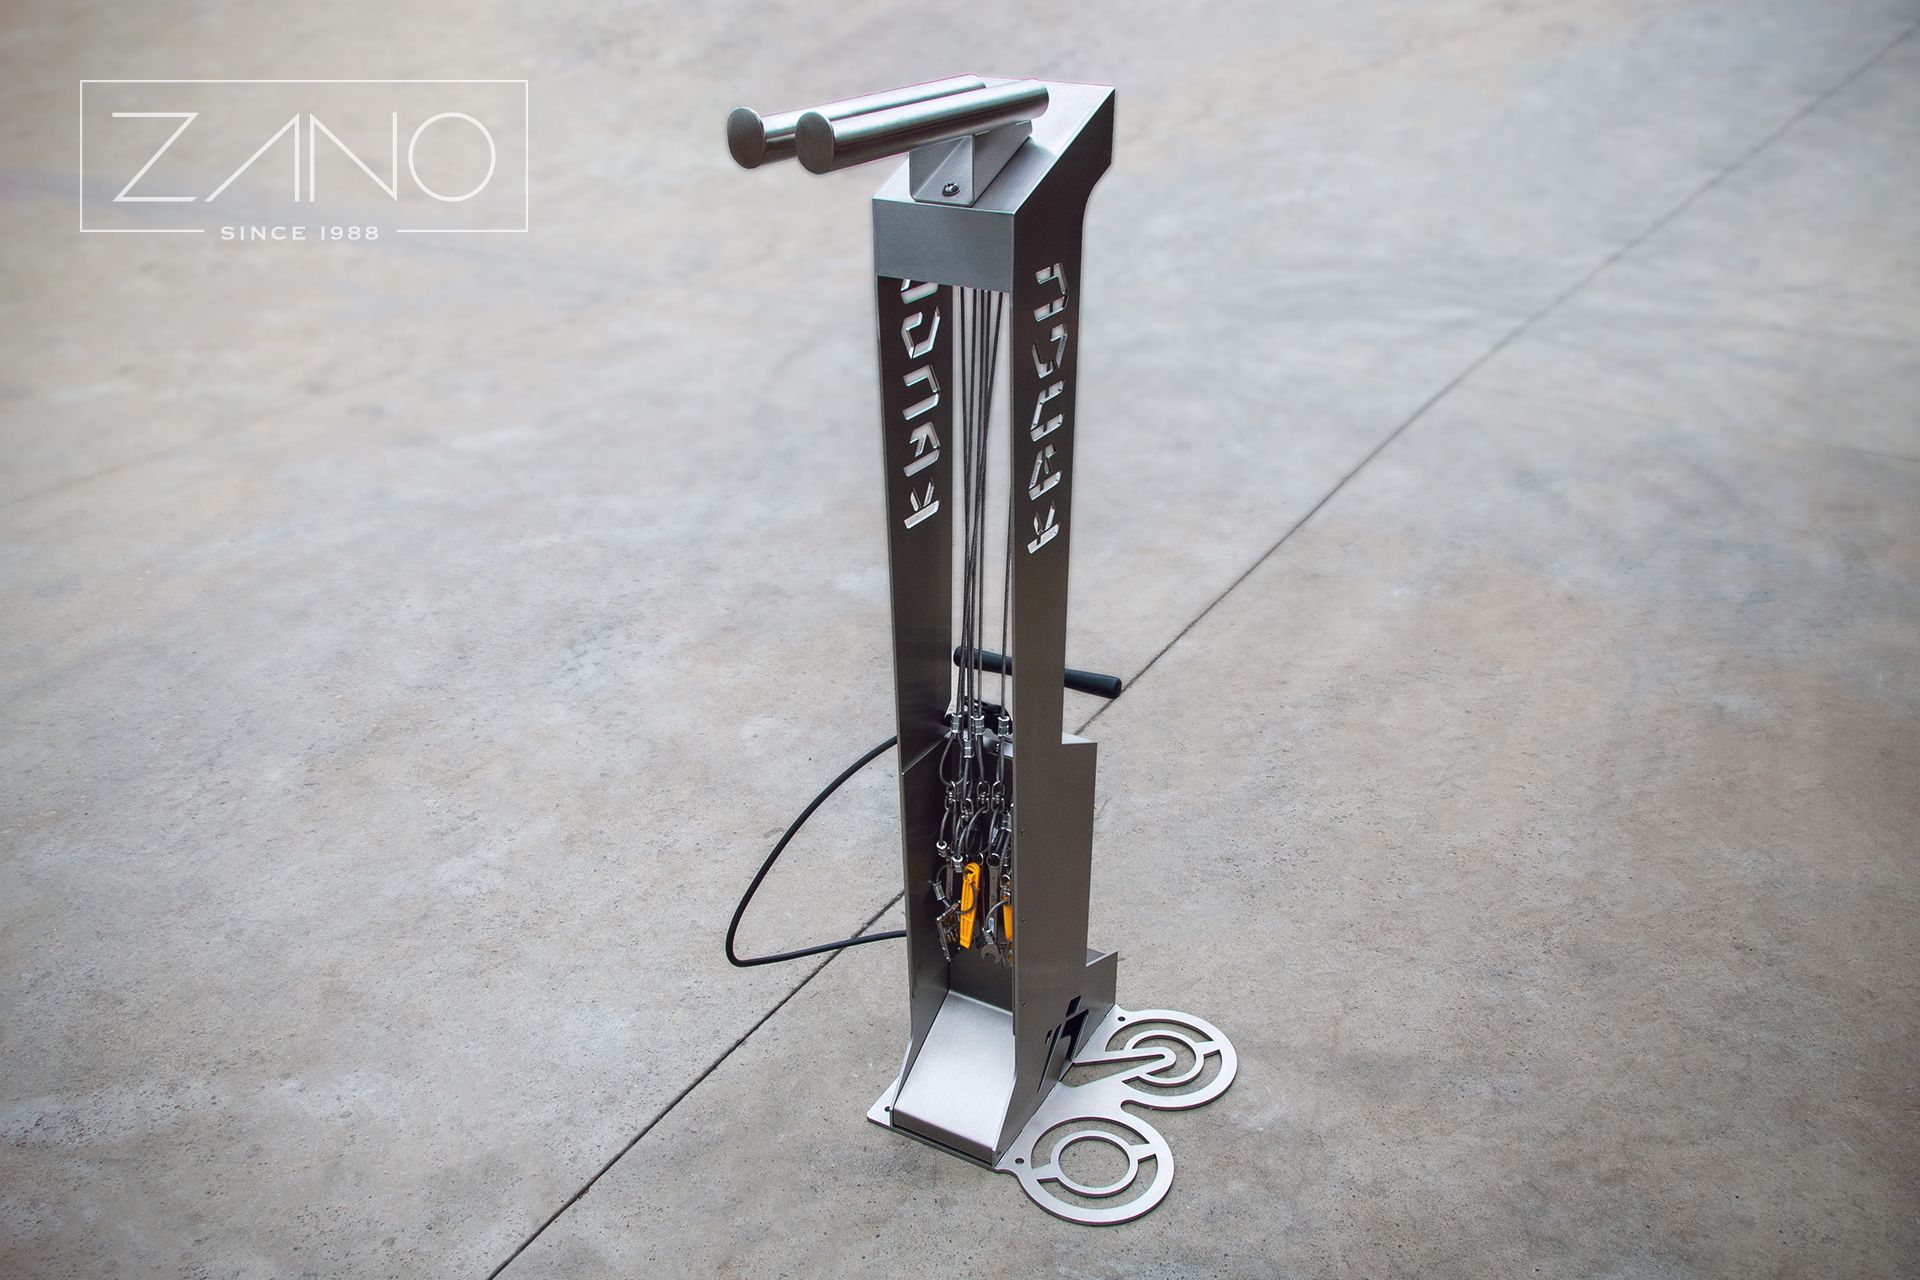 Kangu bike repair station with floor pump